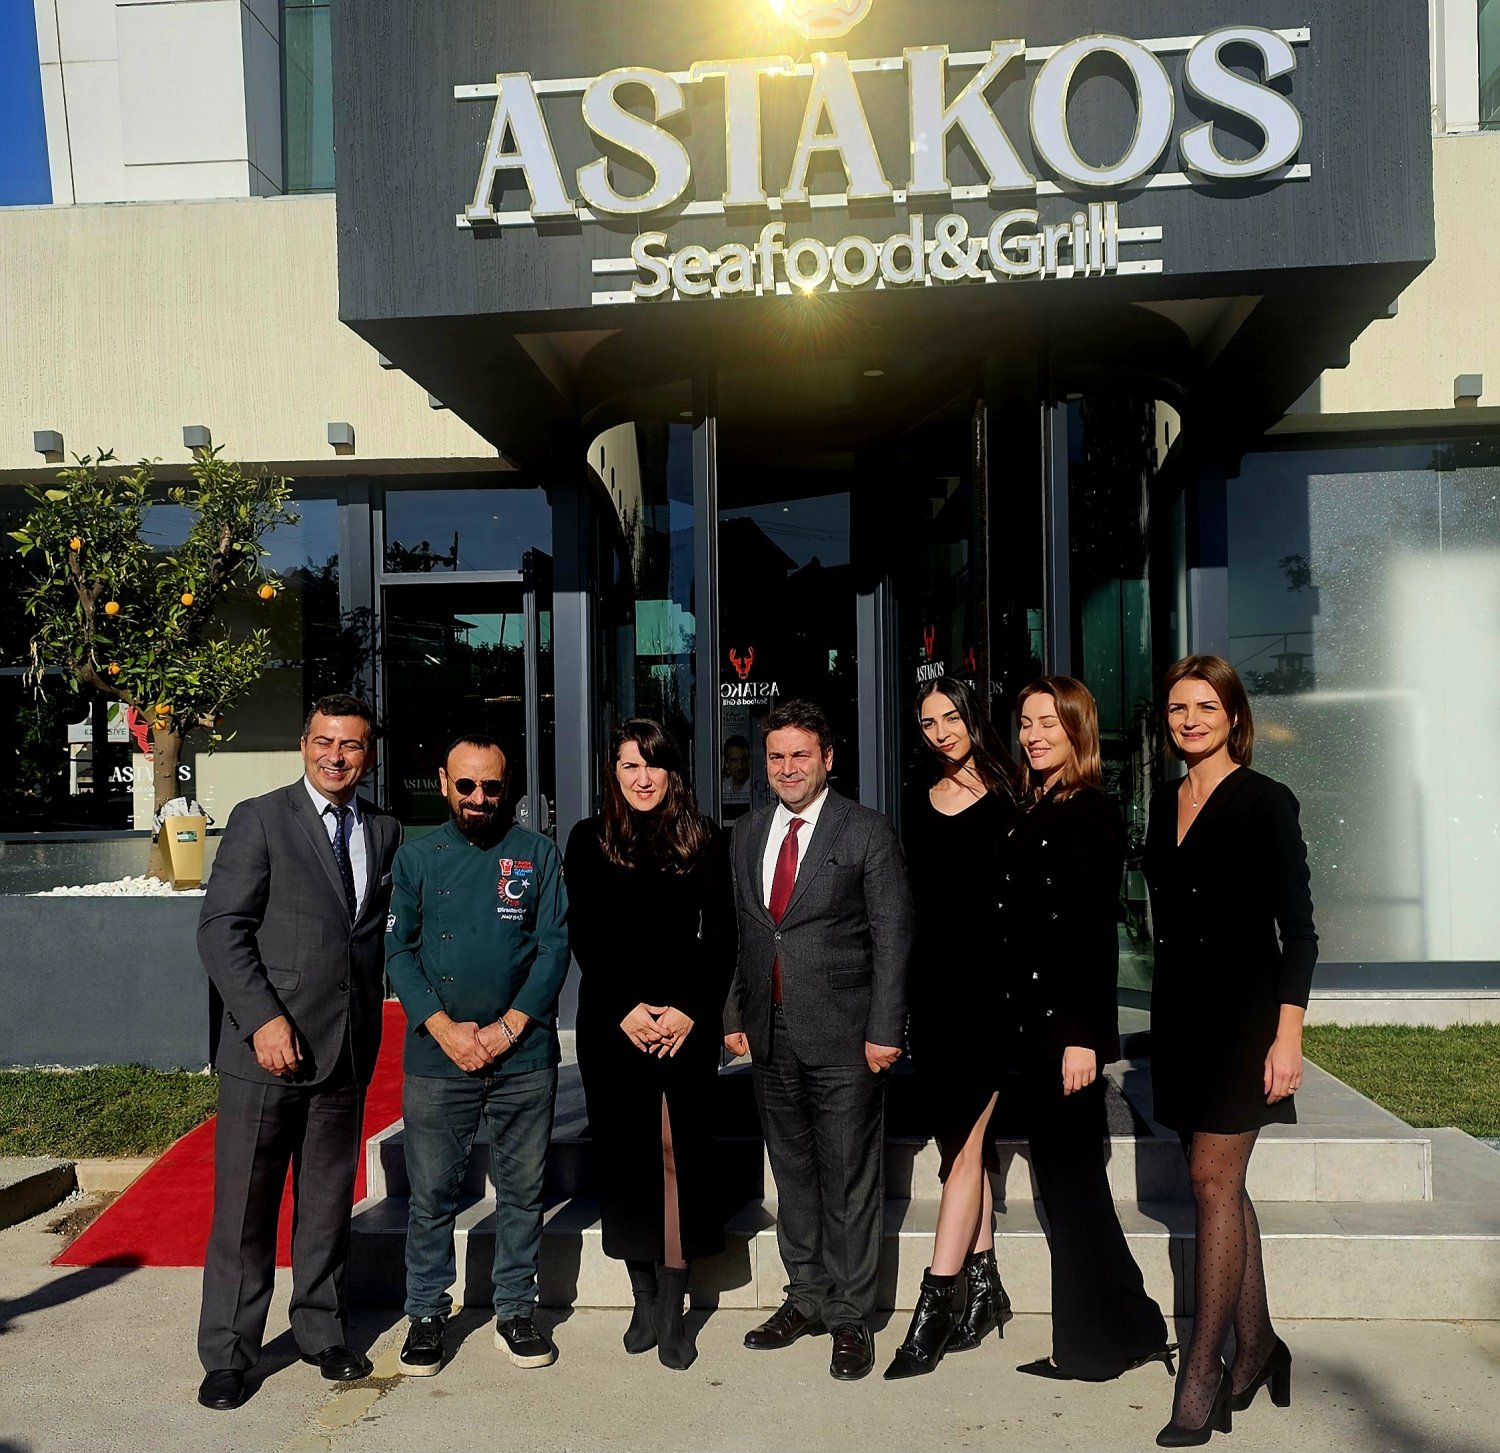 Astakos Seafood Grill Hizmete Açıldı - Kocaeli Paraf Haber Sitesi